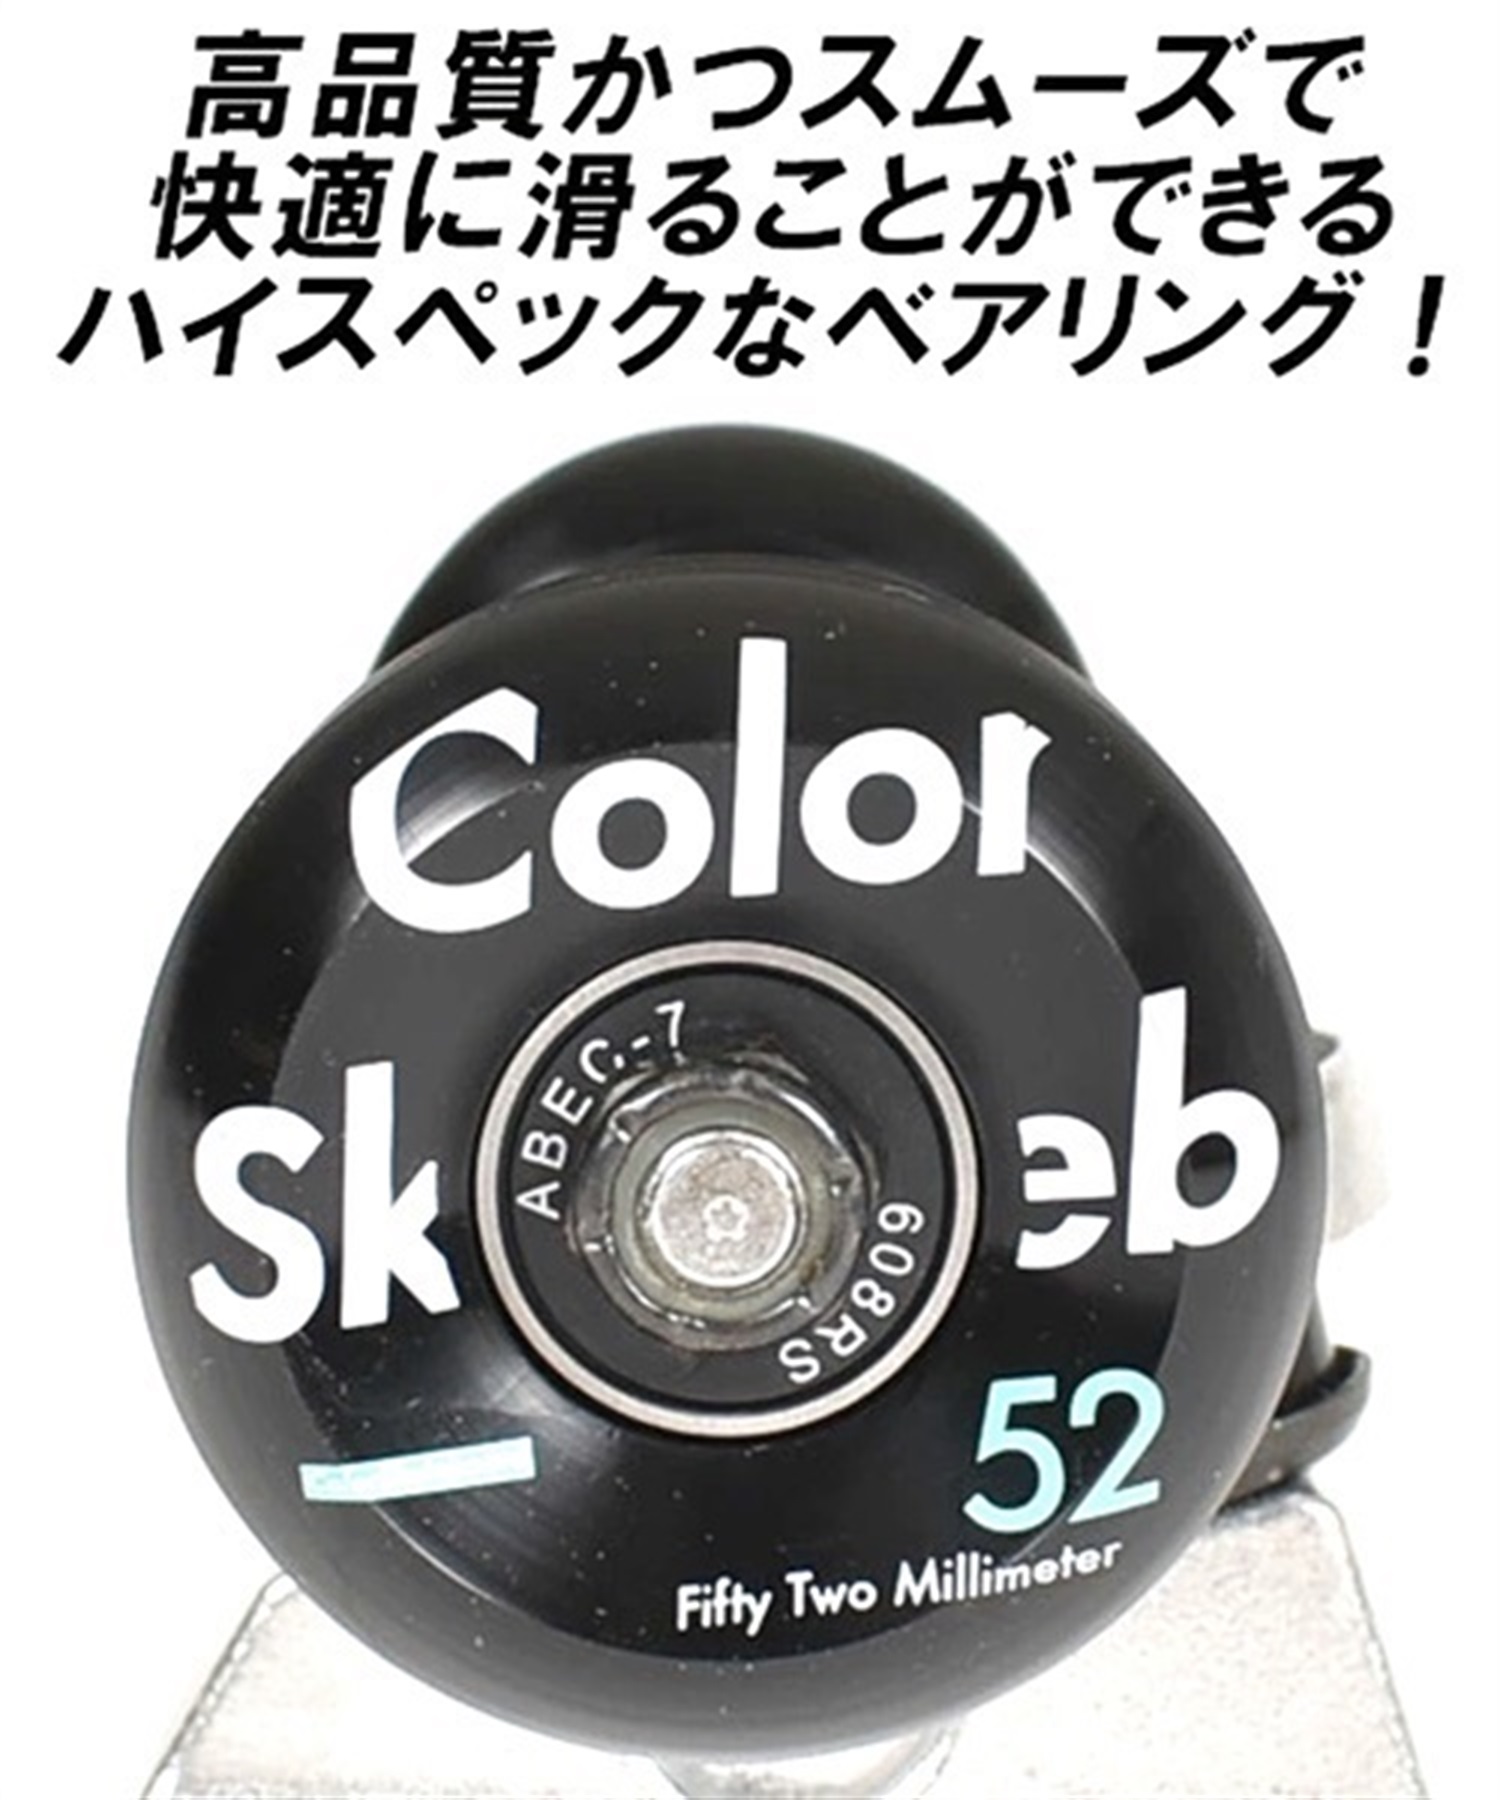 スケートボード コンプリートセット ColorSkateboard カラースケートボード COLOR COMPLETE BK オンラインストア限定   完成品 組み立て調整済み(BK-8.0inch)